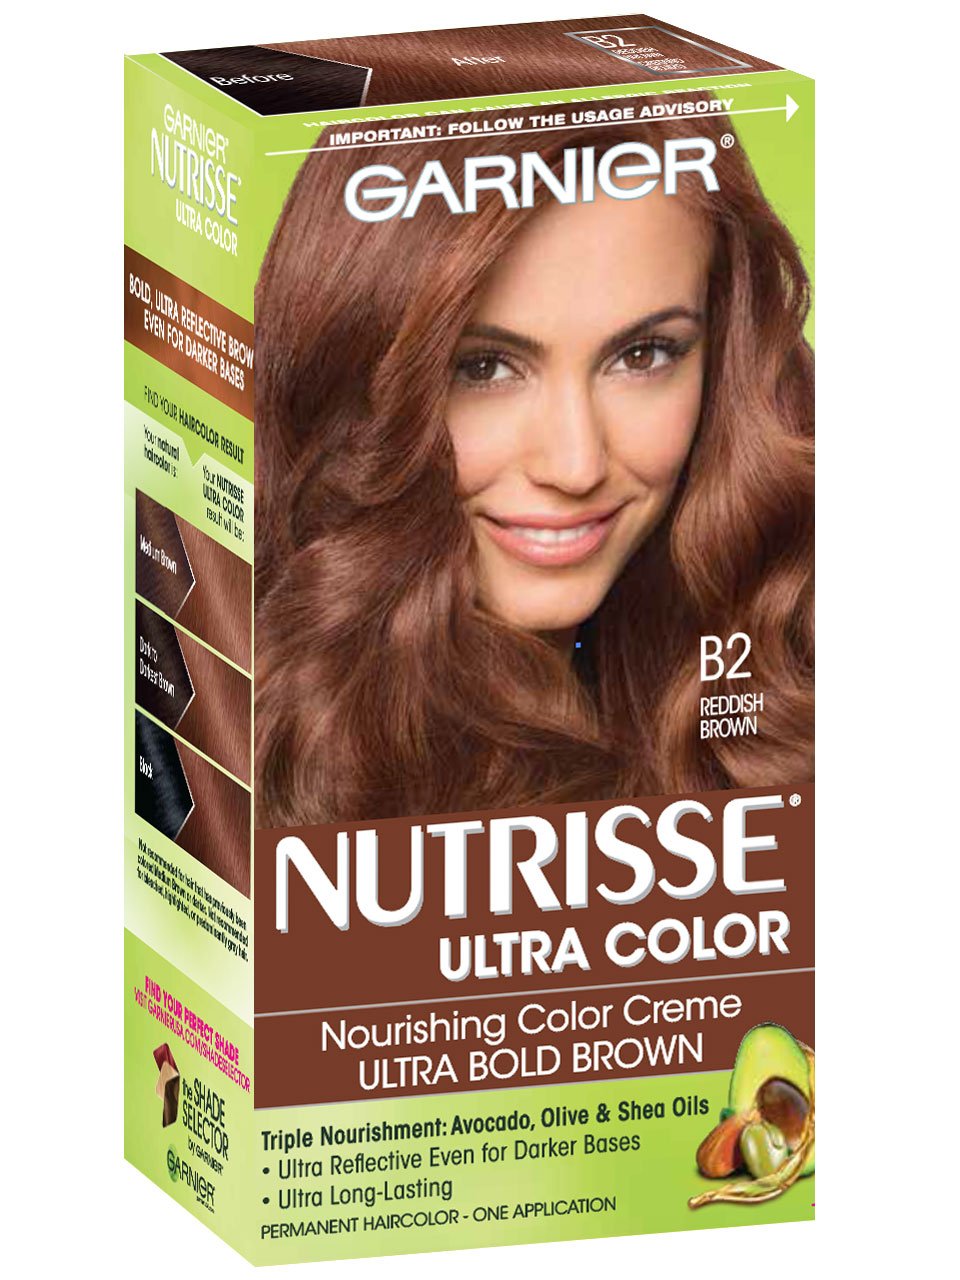 Nutrisse Ultra-Color - Coloración Reddish Brown - Garnier